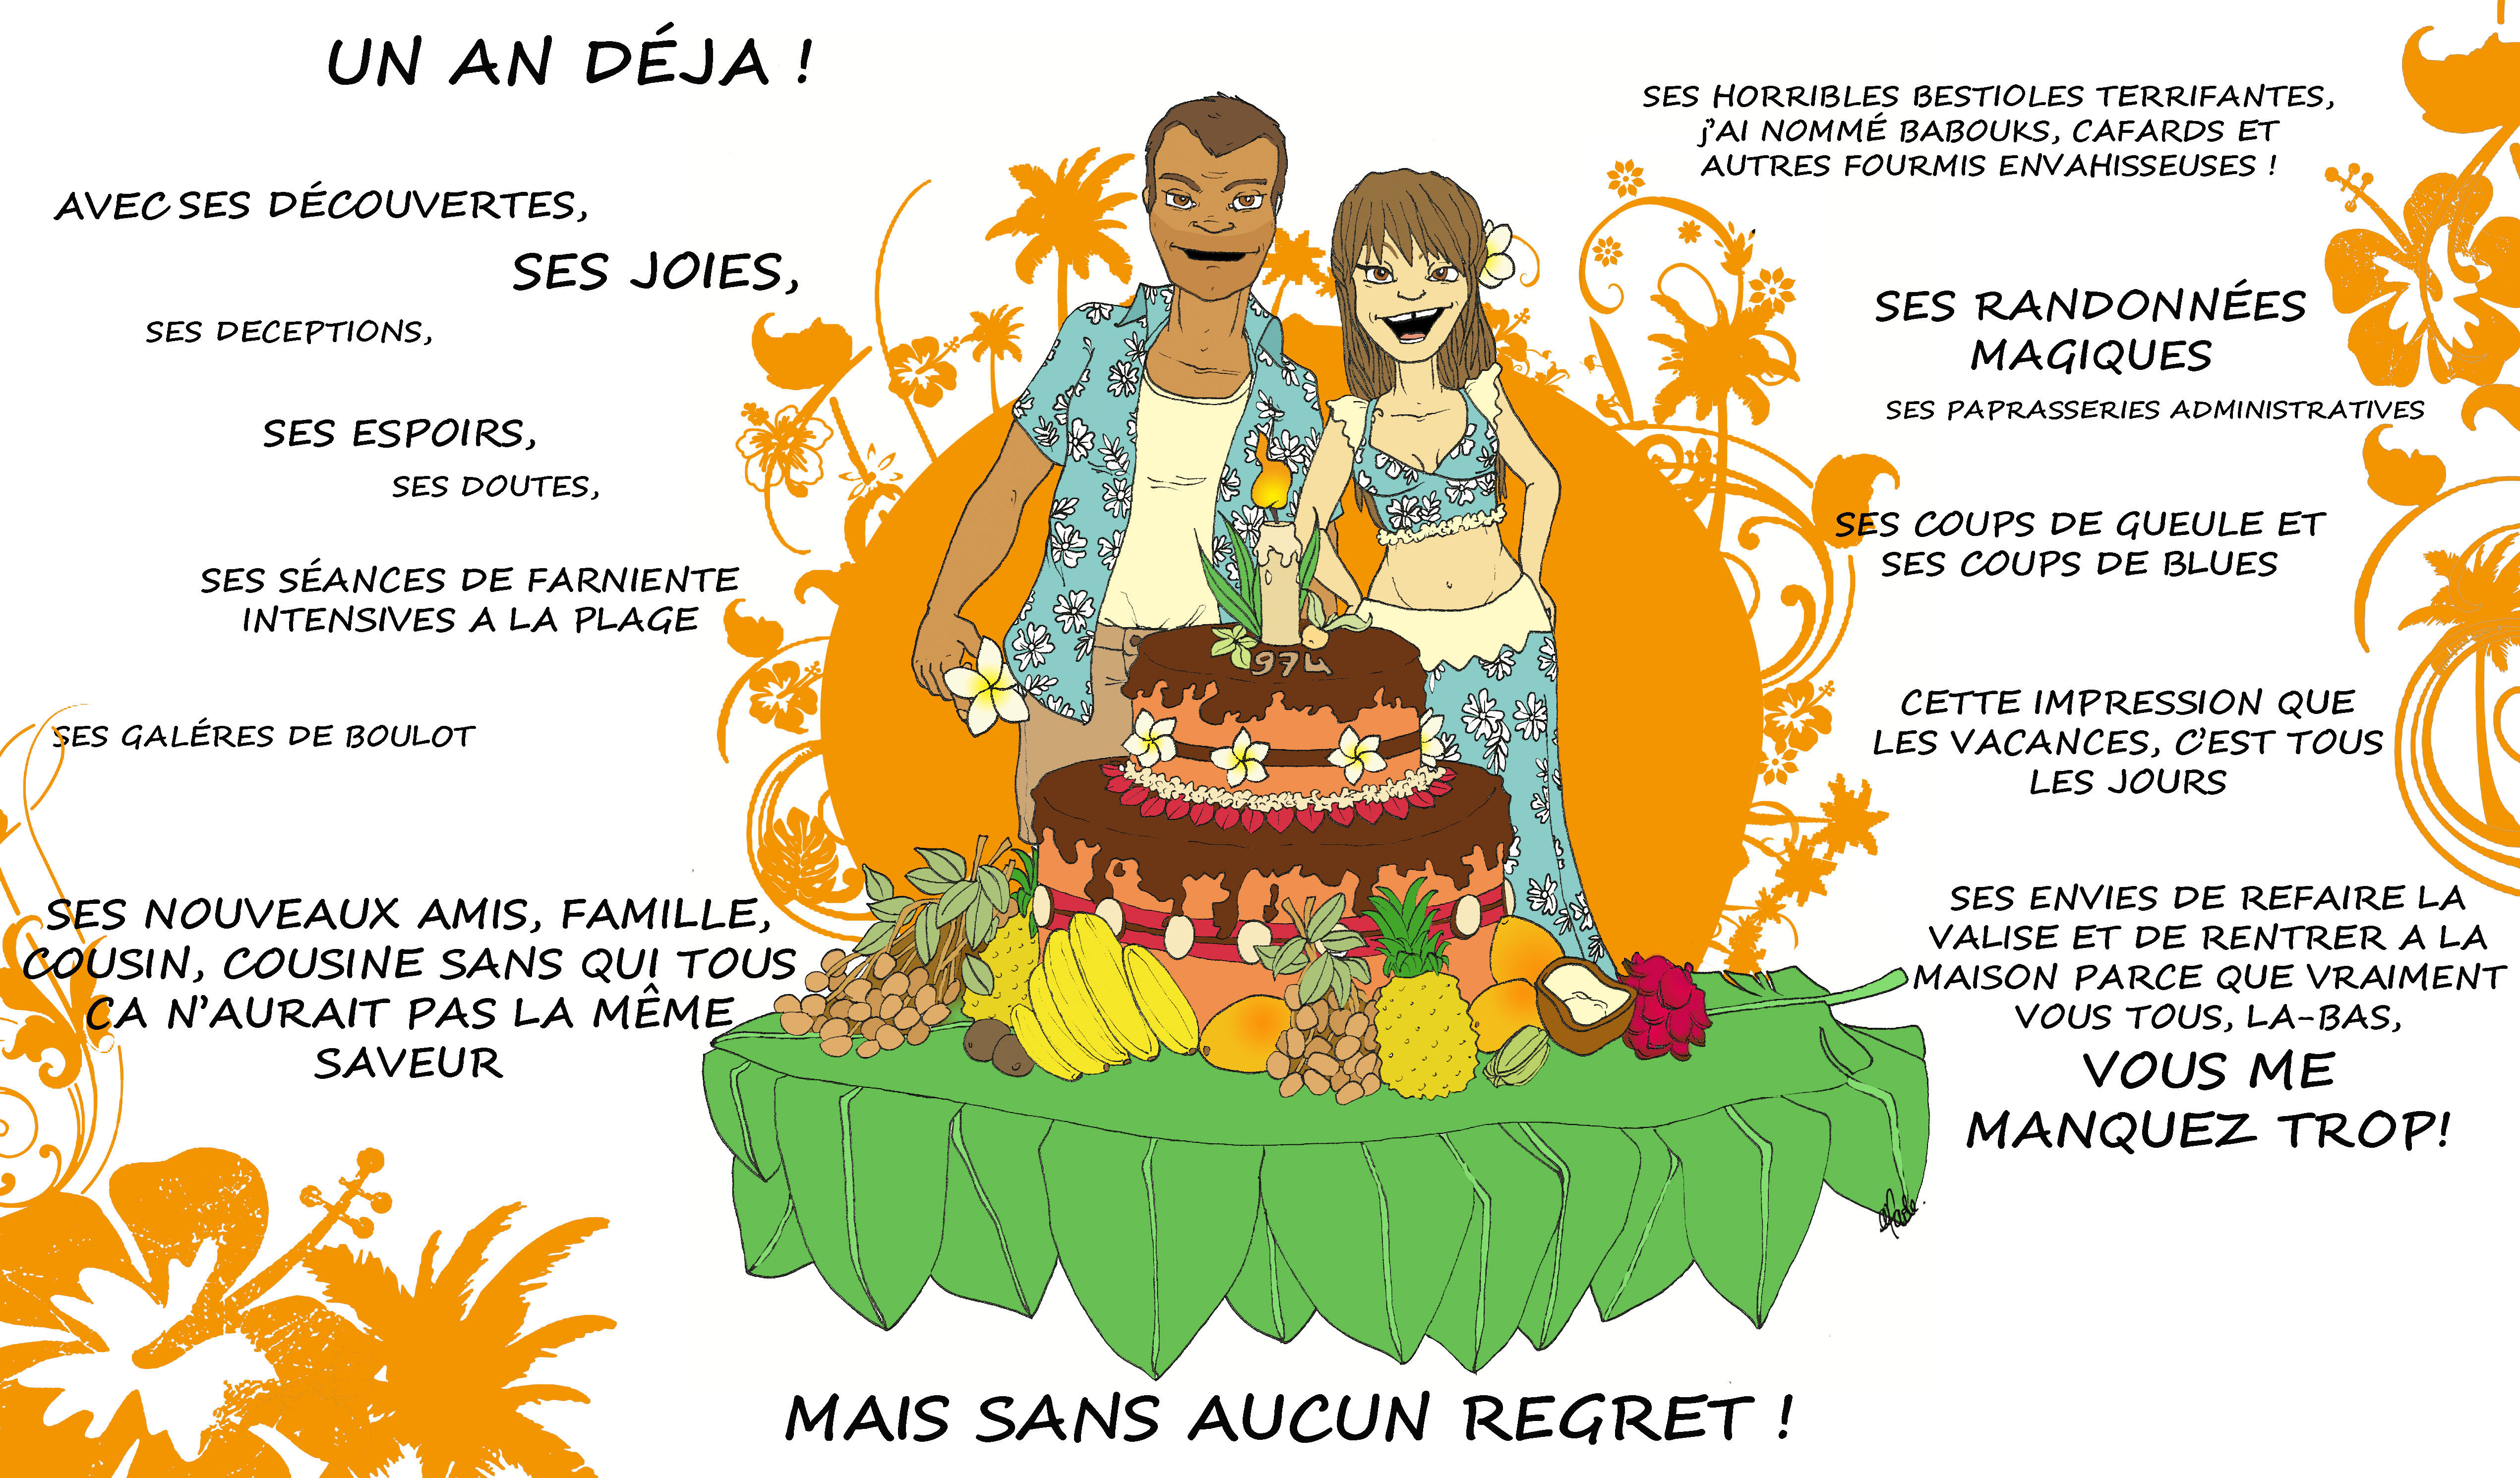 bon anniversaire en créole réunionnais Animation Anniversaire Ile De La Reunion bon anniversaire en créole réunionnais